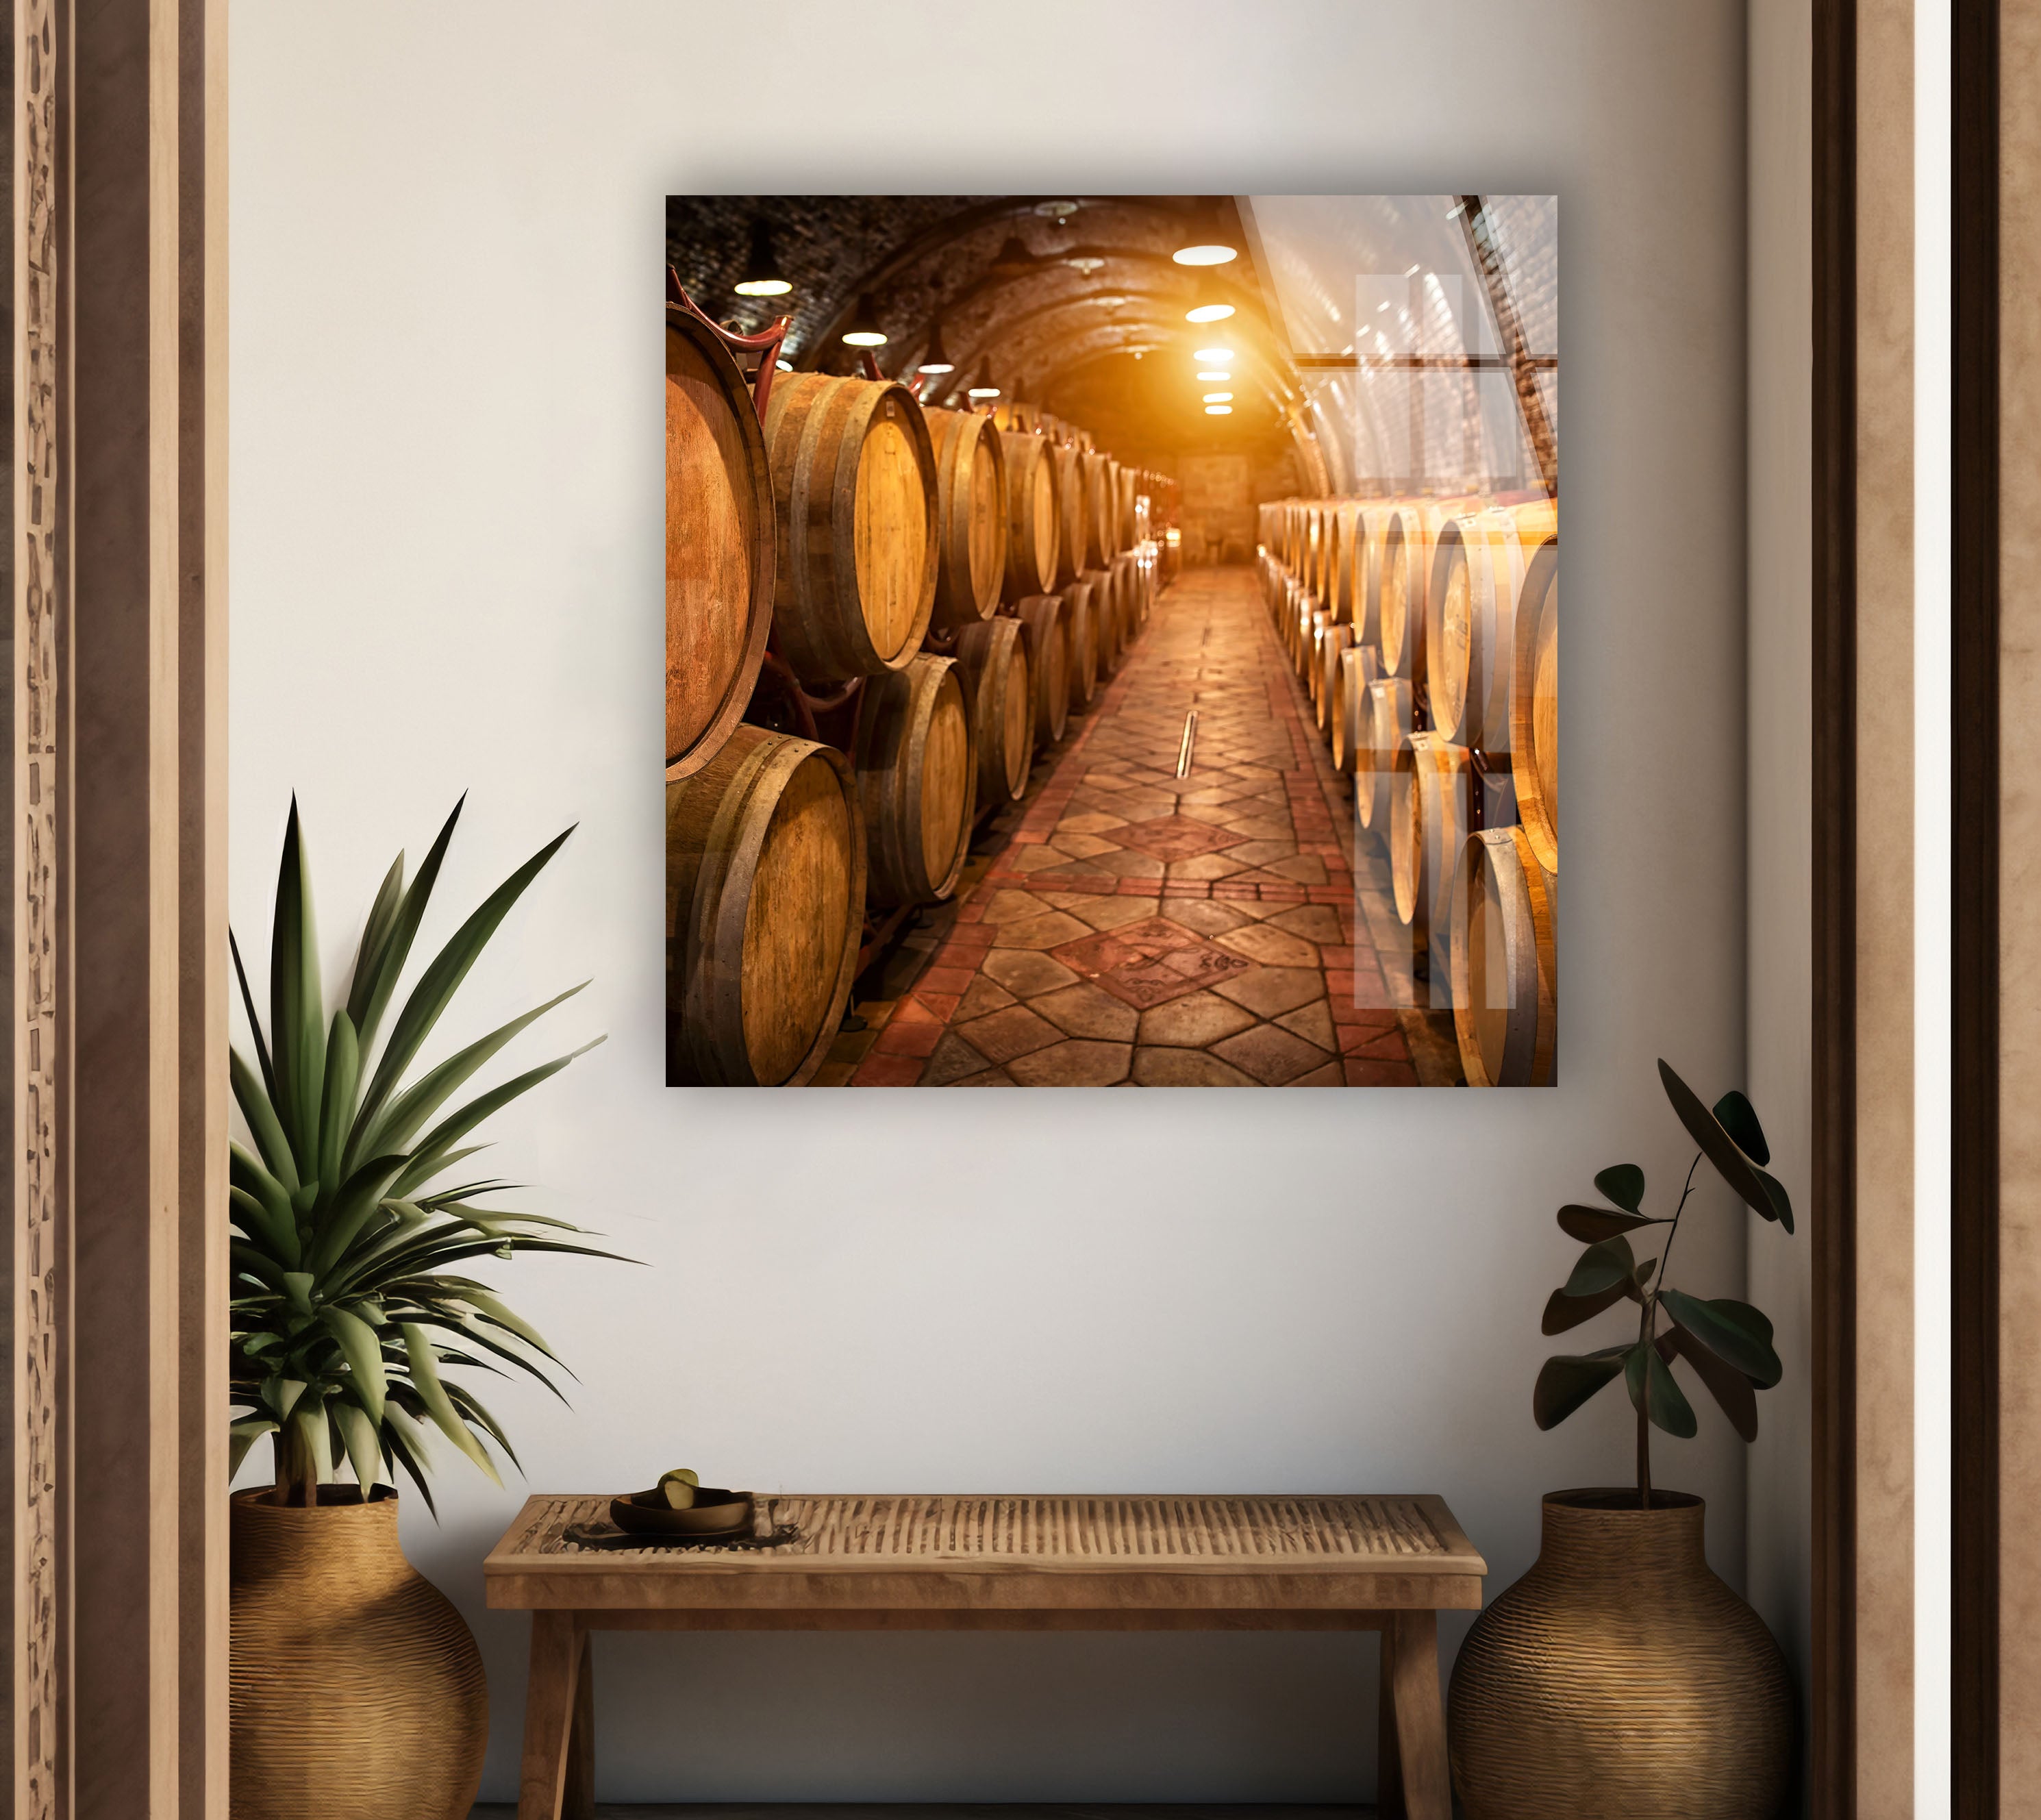 Wine Barrels Tempered Glass Wall Art